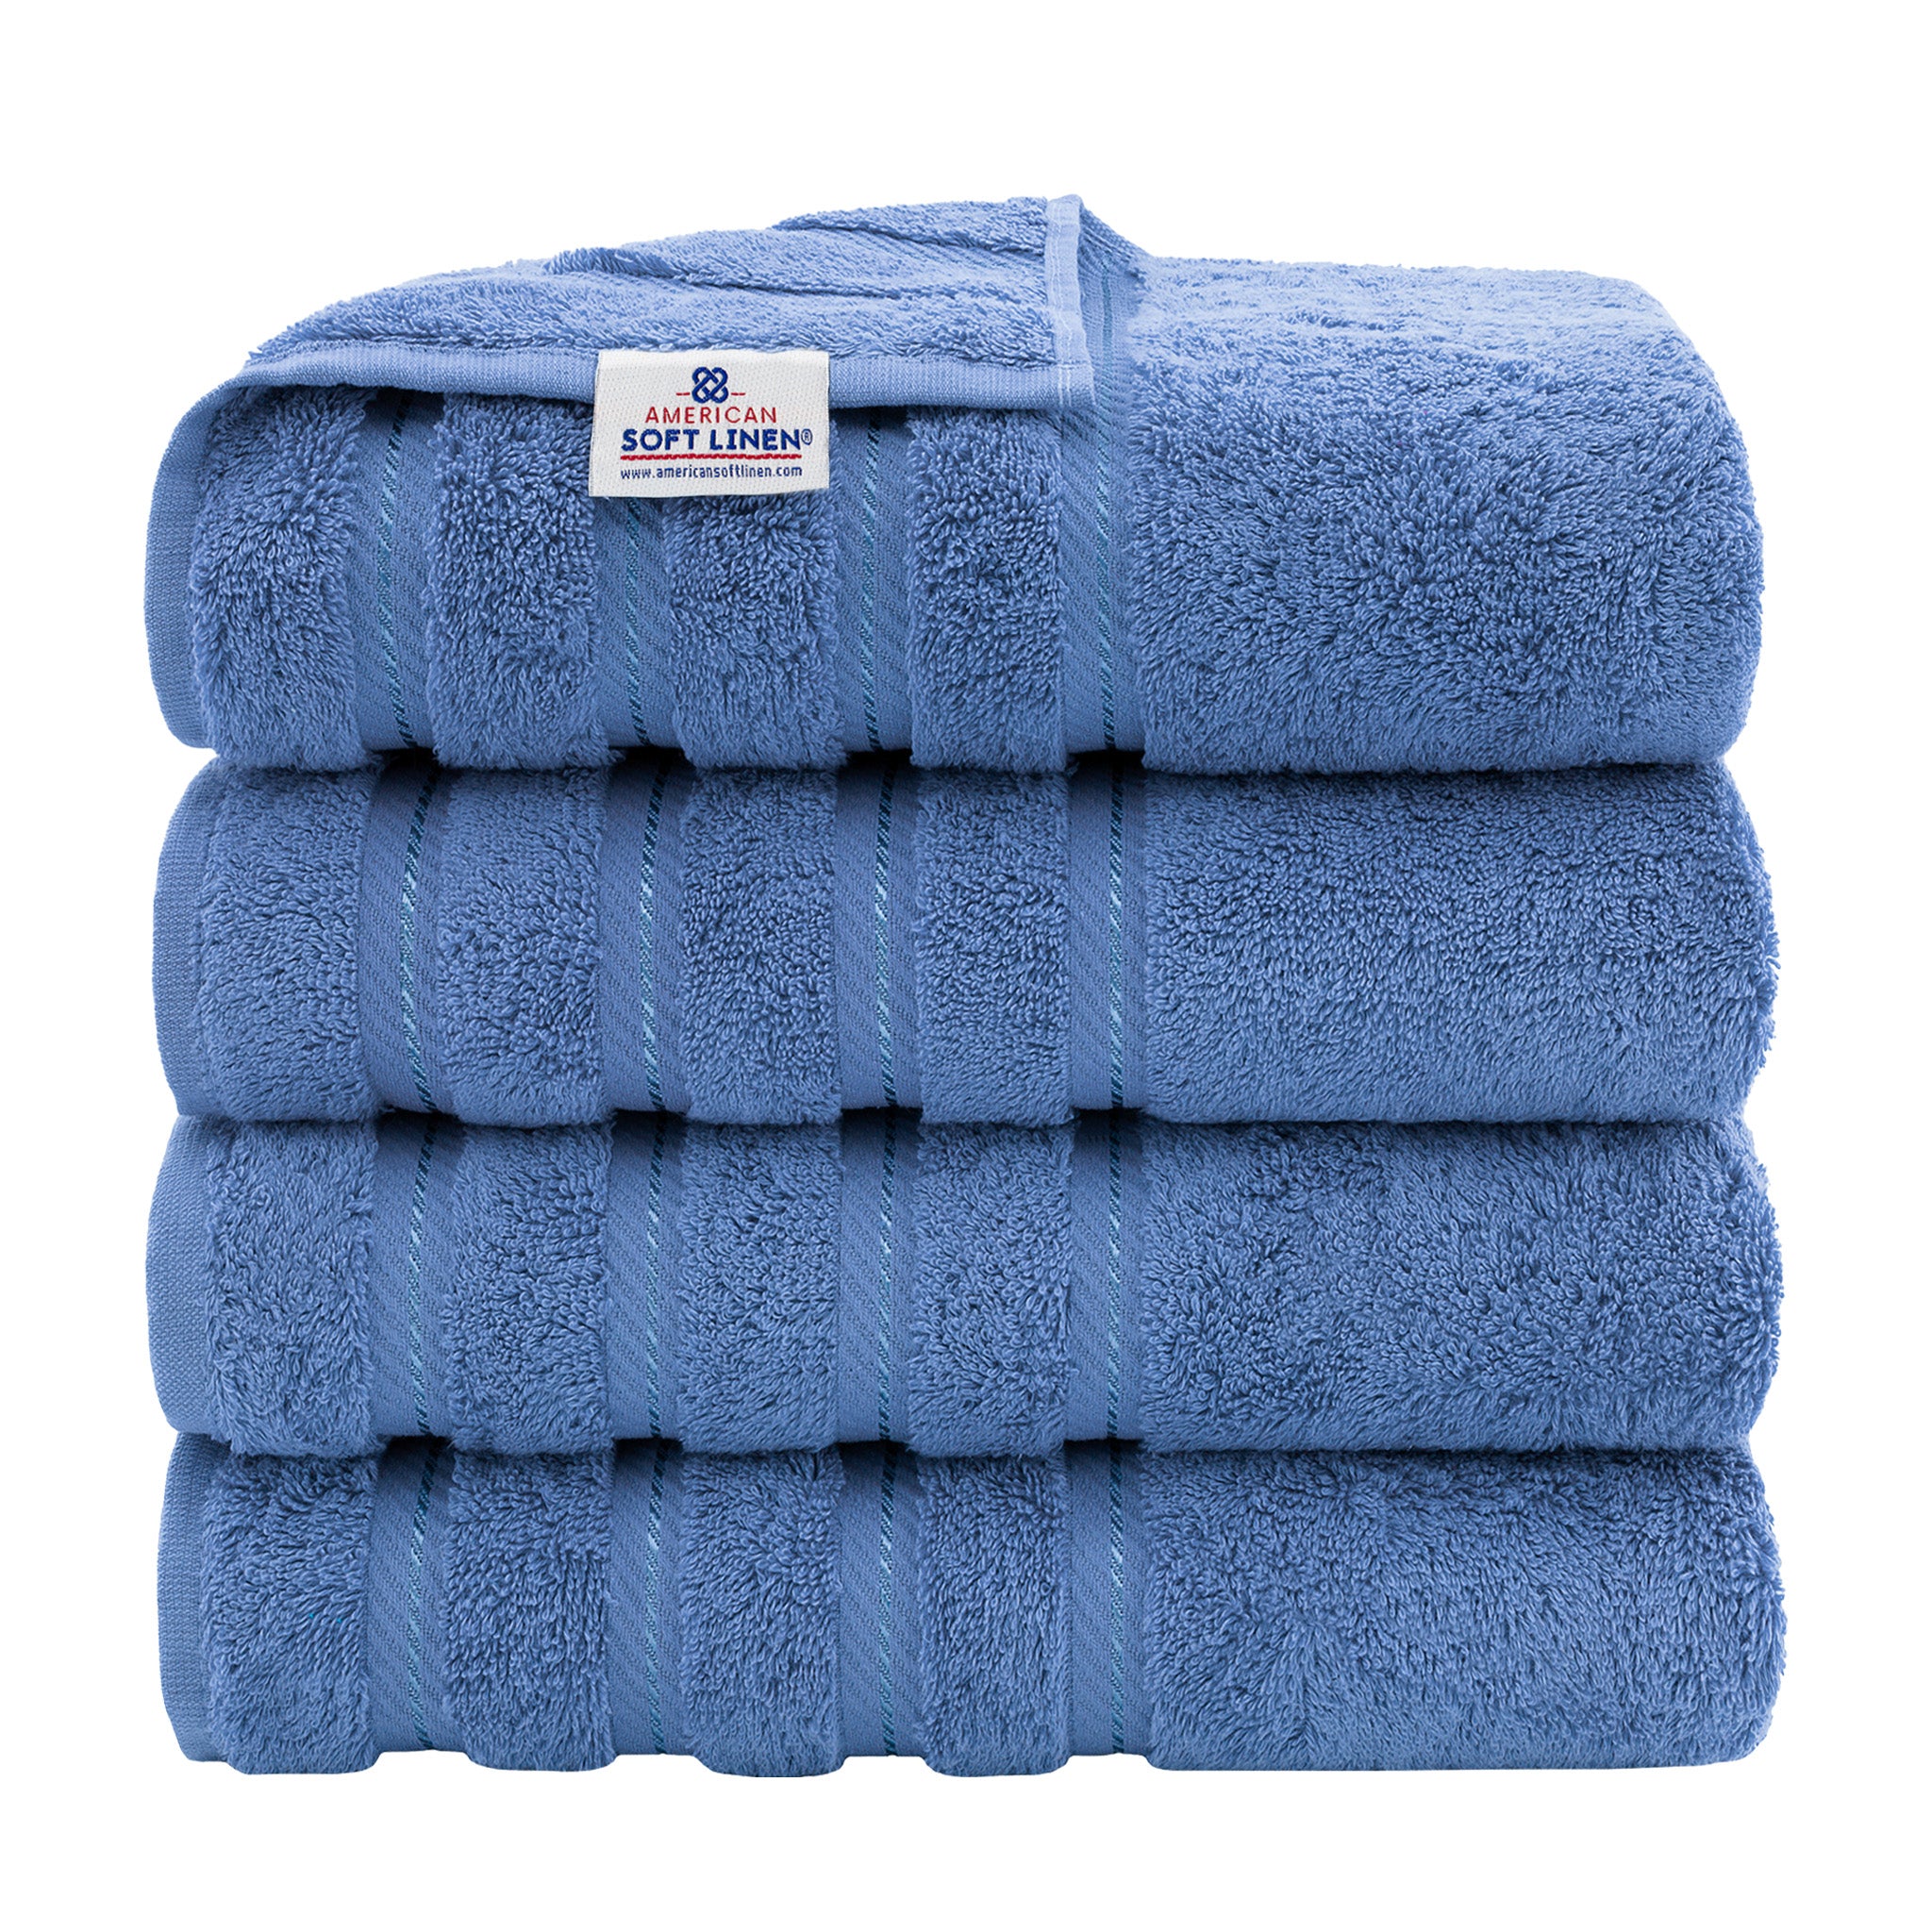 American Soft Linen 100% Turkish Cotton 4 Pack Bath Towel Set Wholesale electric-blue-1